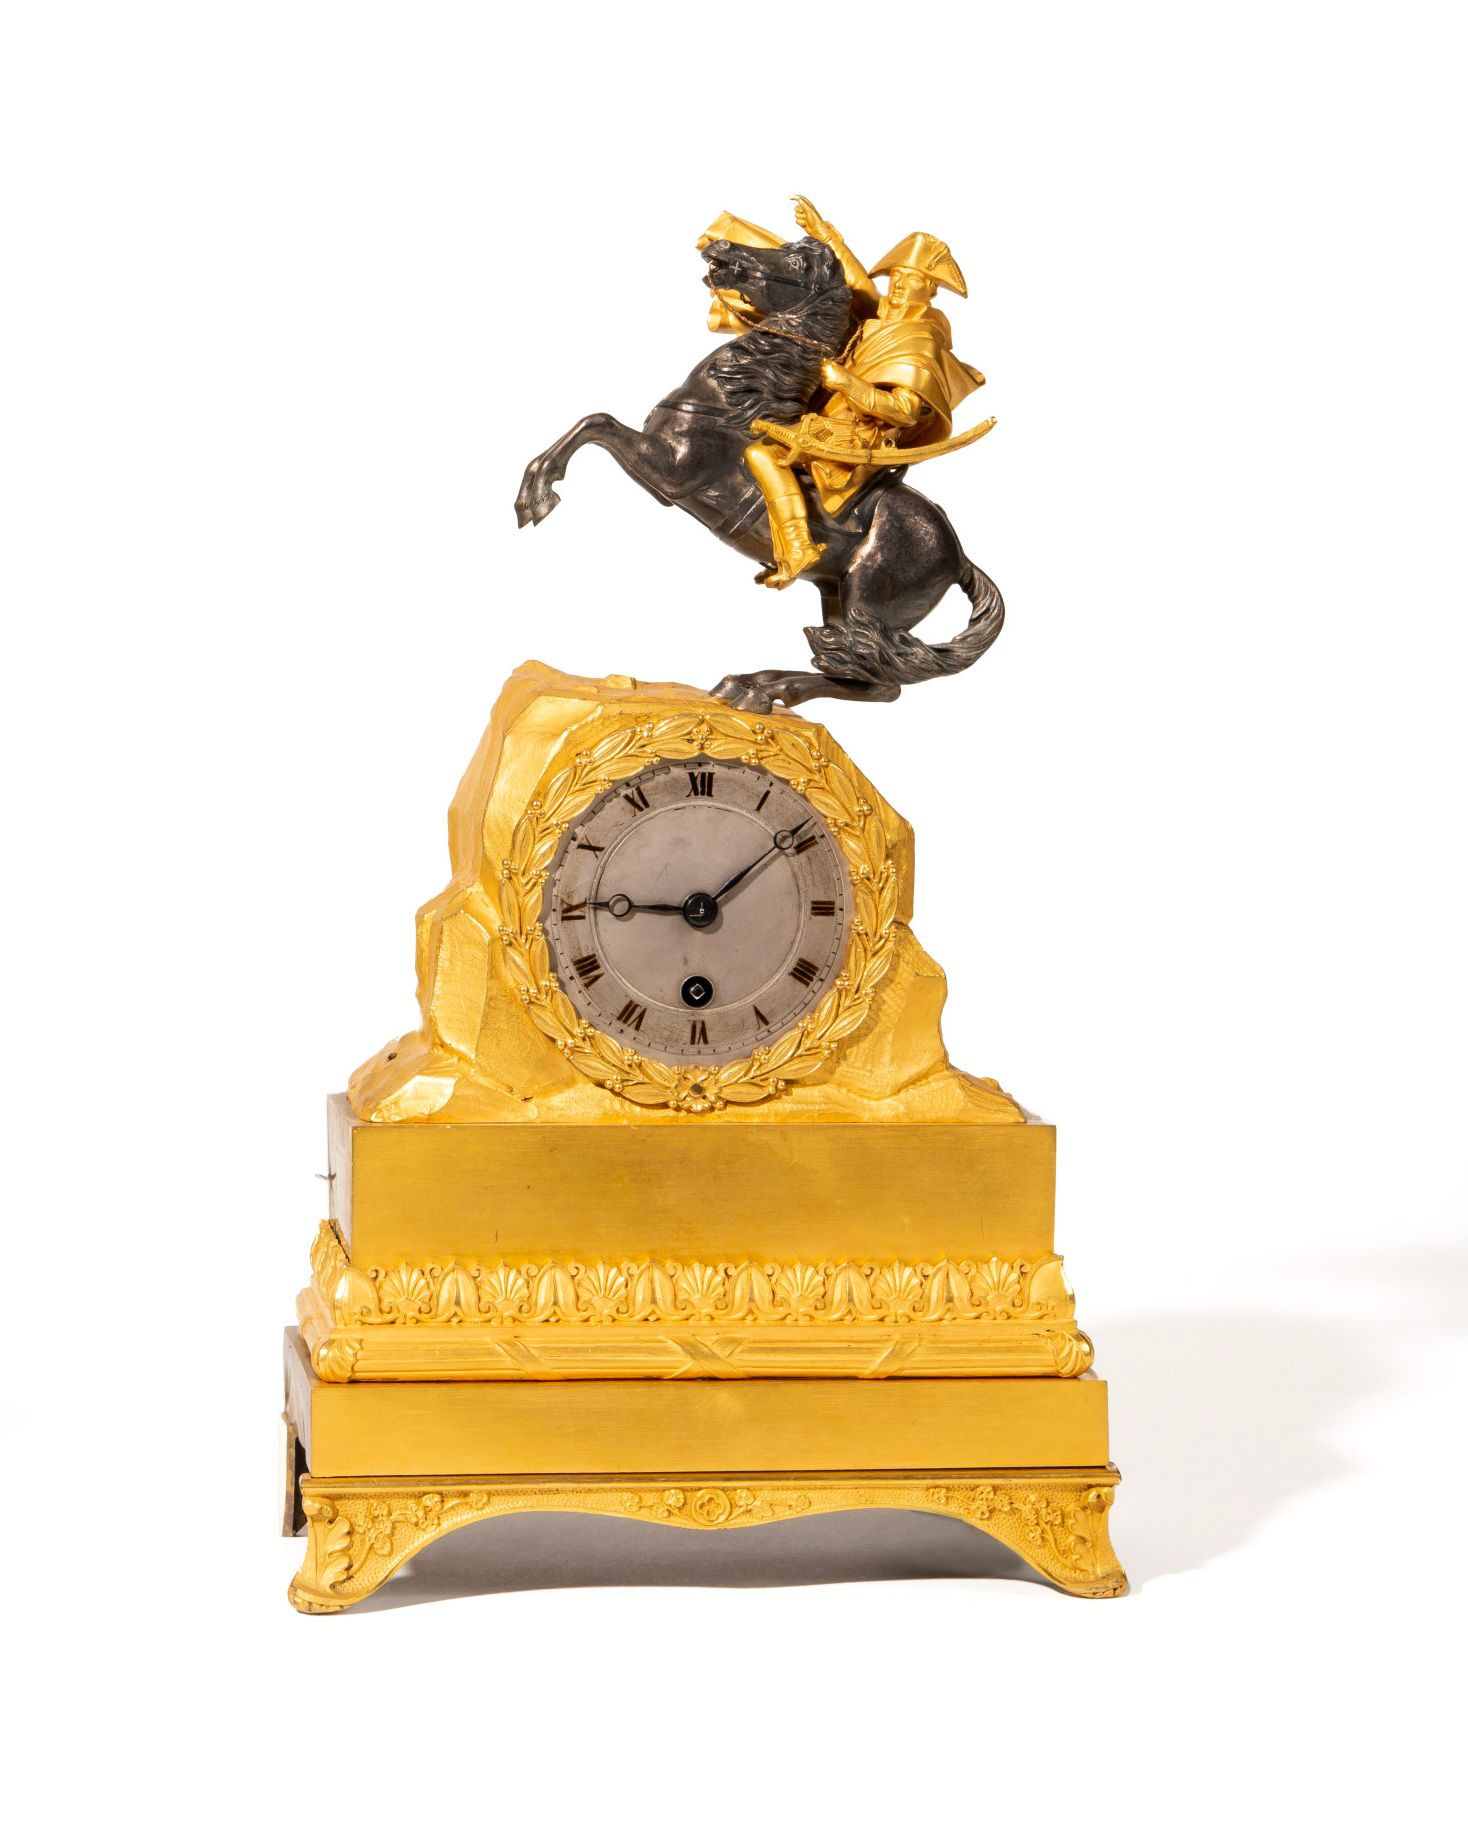 Null "波拿巴将军在大圣伯纳山口"。

鎏金青铜和银色的挂钟，上面有骑马的皇帝。

银色表盘上有罗马数字。

27 x 16 cm。

按原样。19世纪。